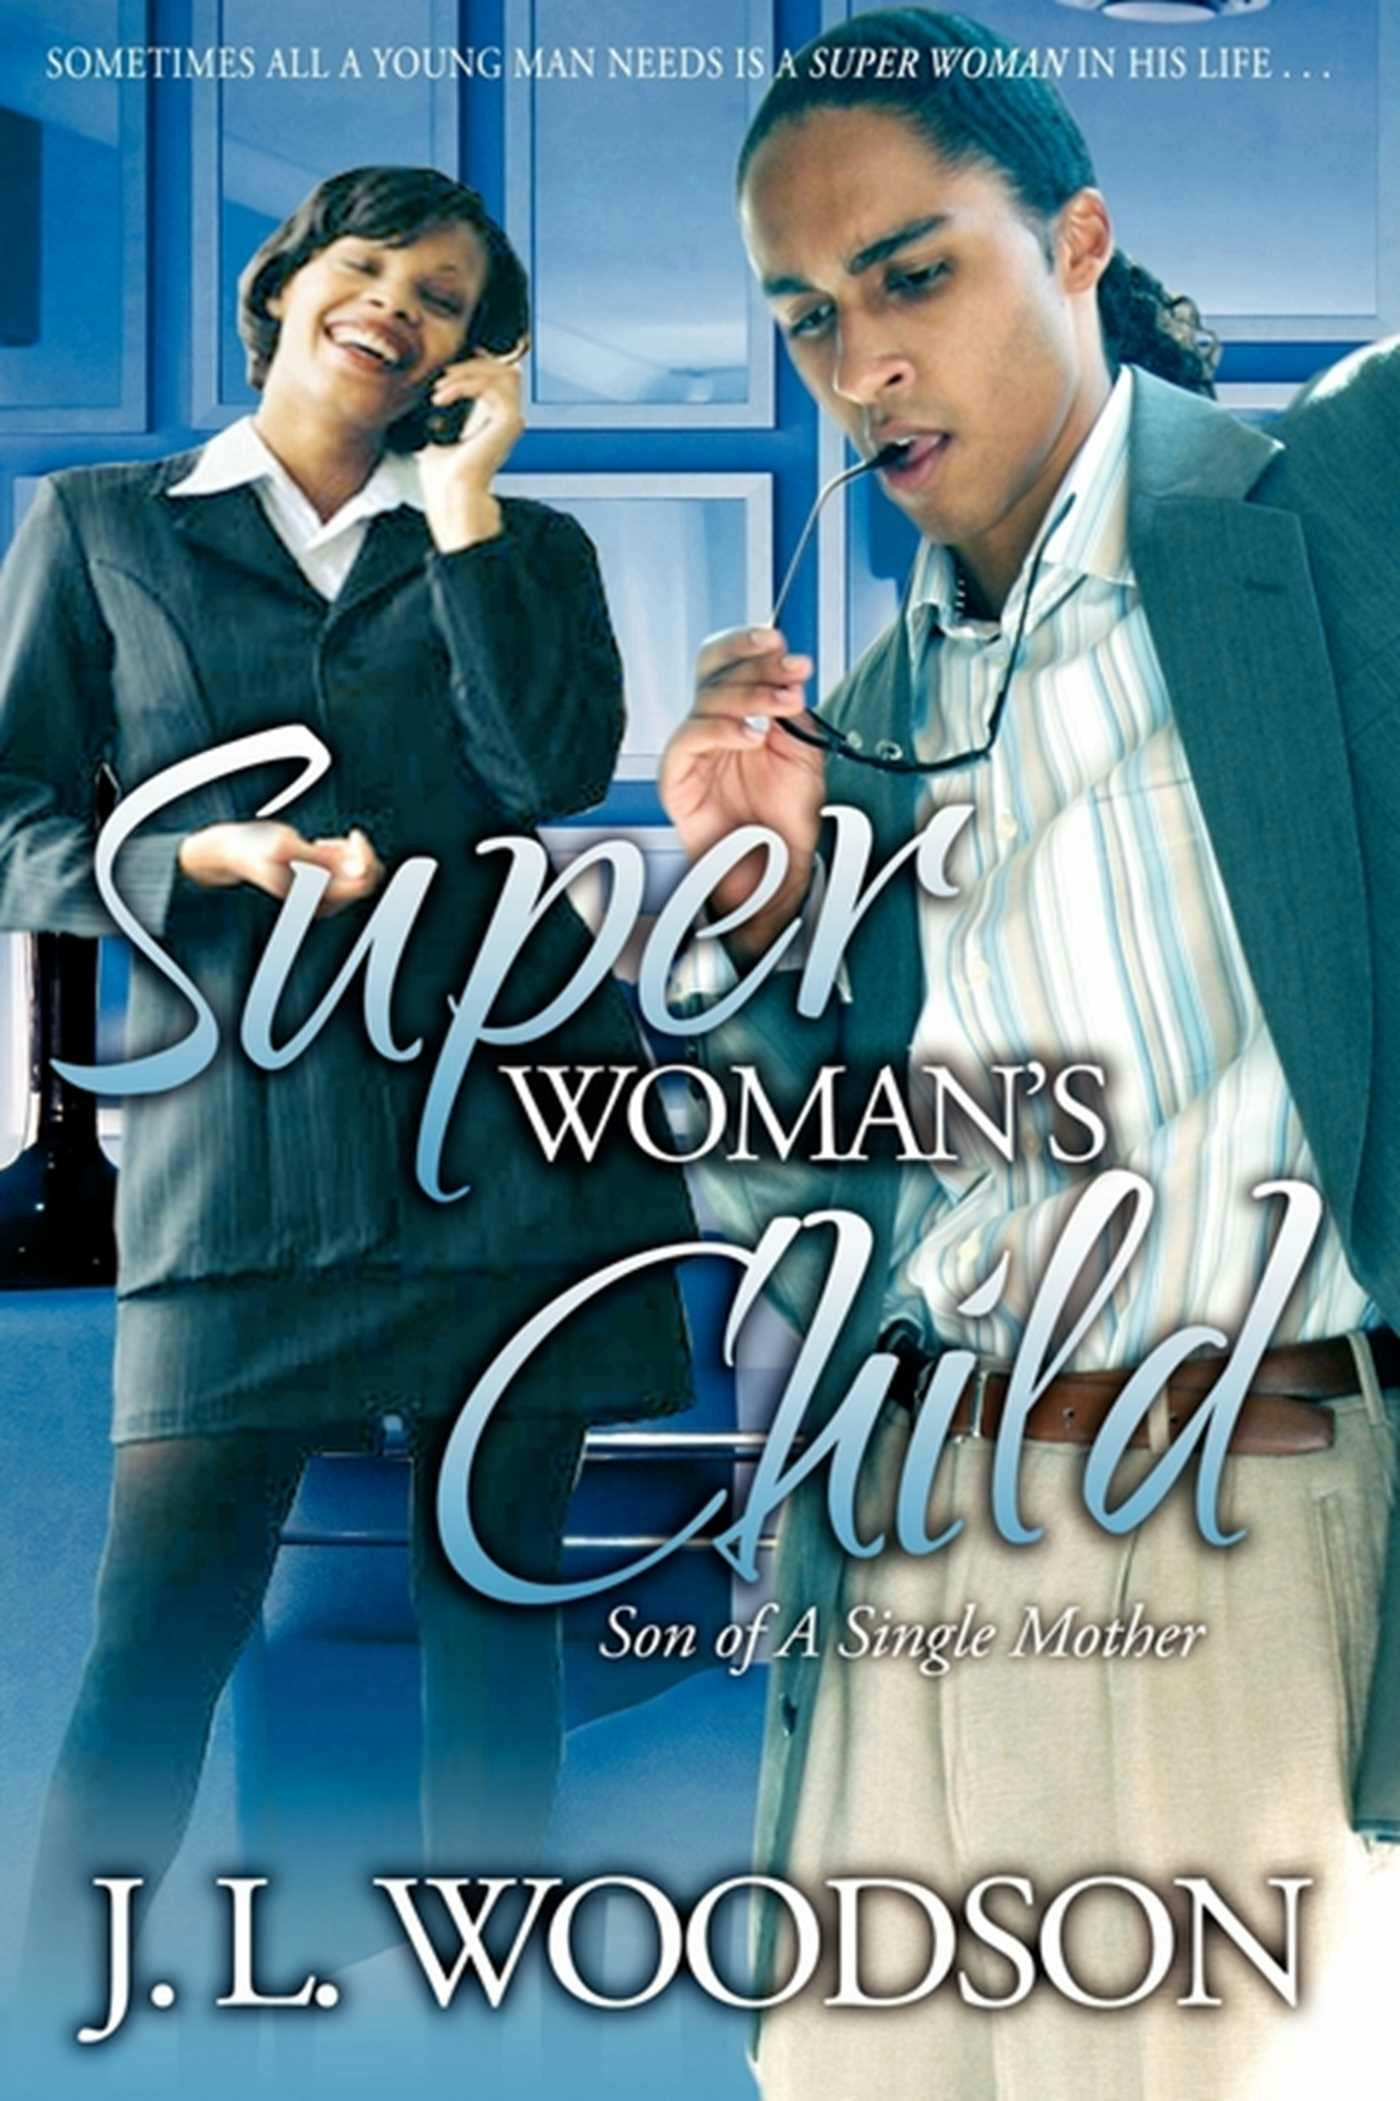 Superwoman's Child: Son of a Single Mother - J. L. Woodson